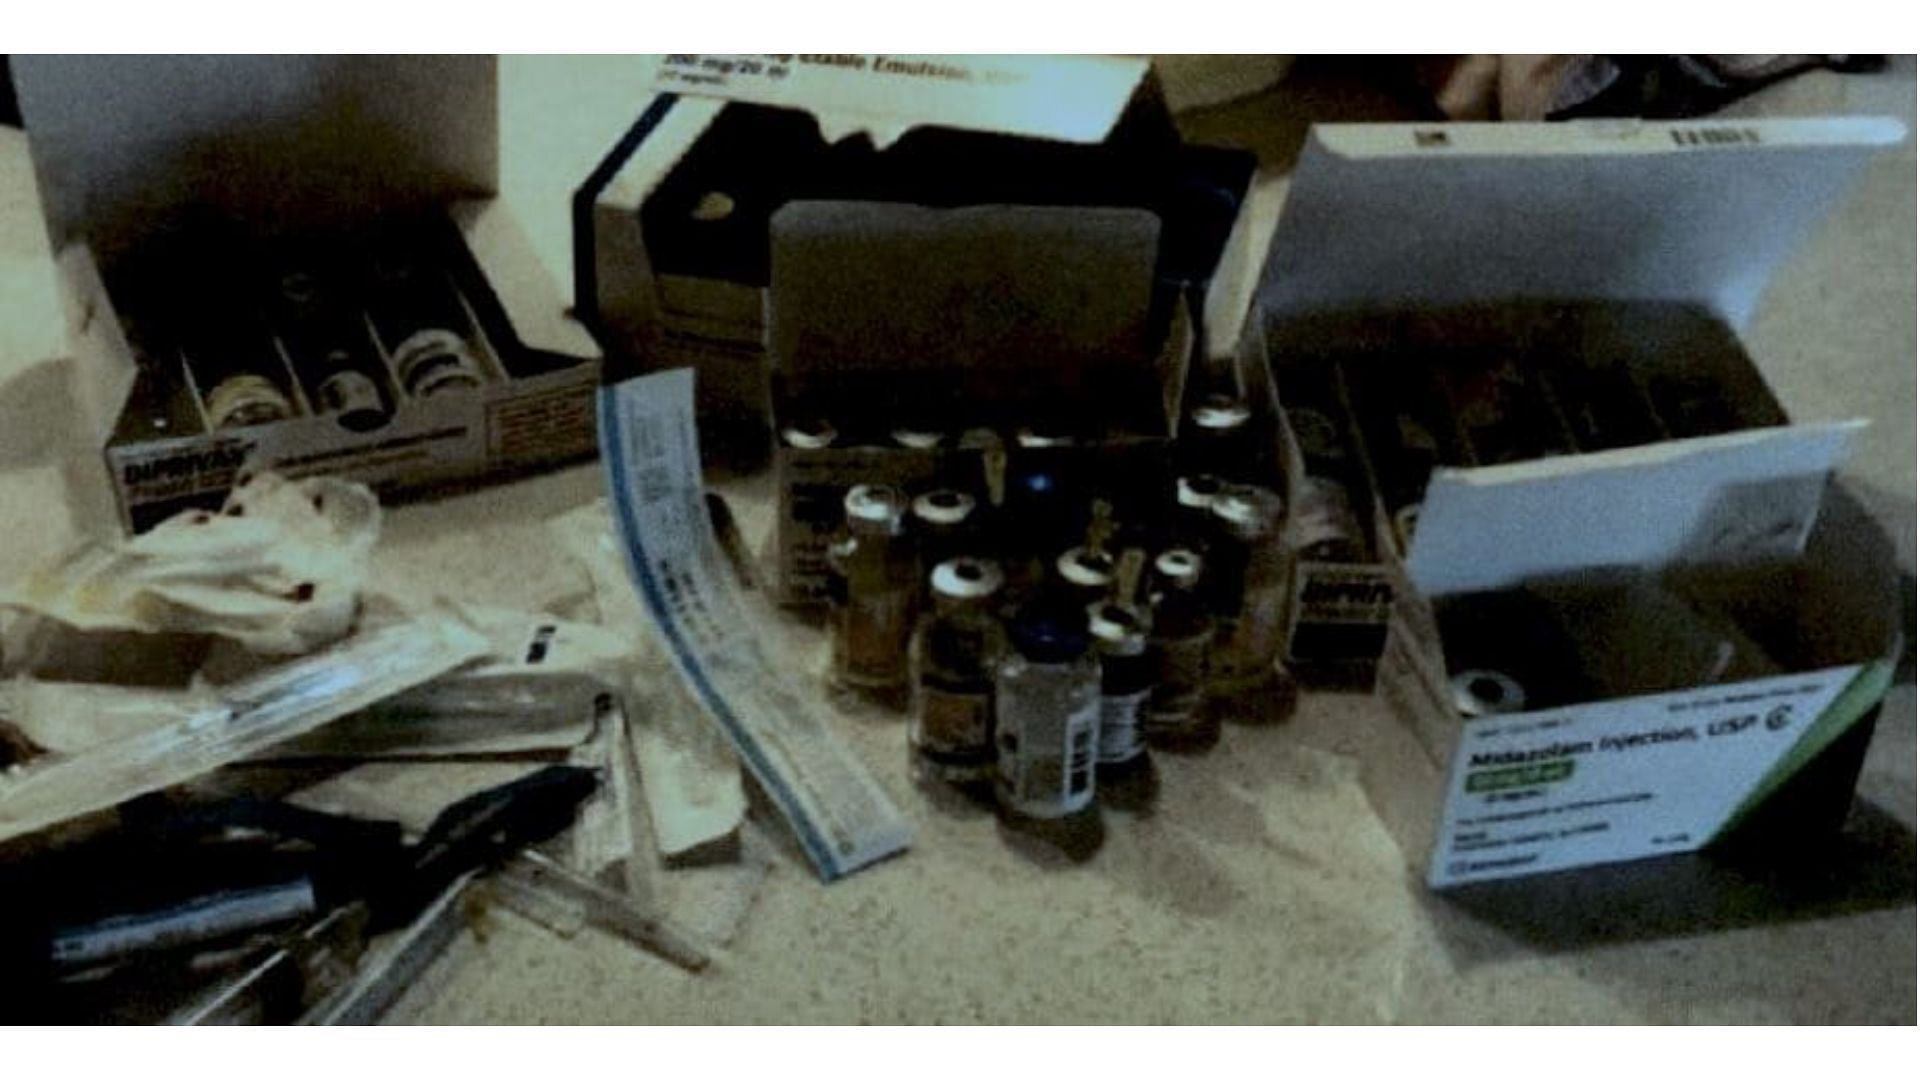 Drug vials found inside Dr. James Ryan&rsquo;s home (Image via trial evidence)